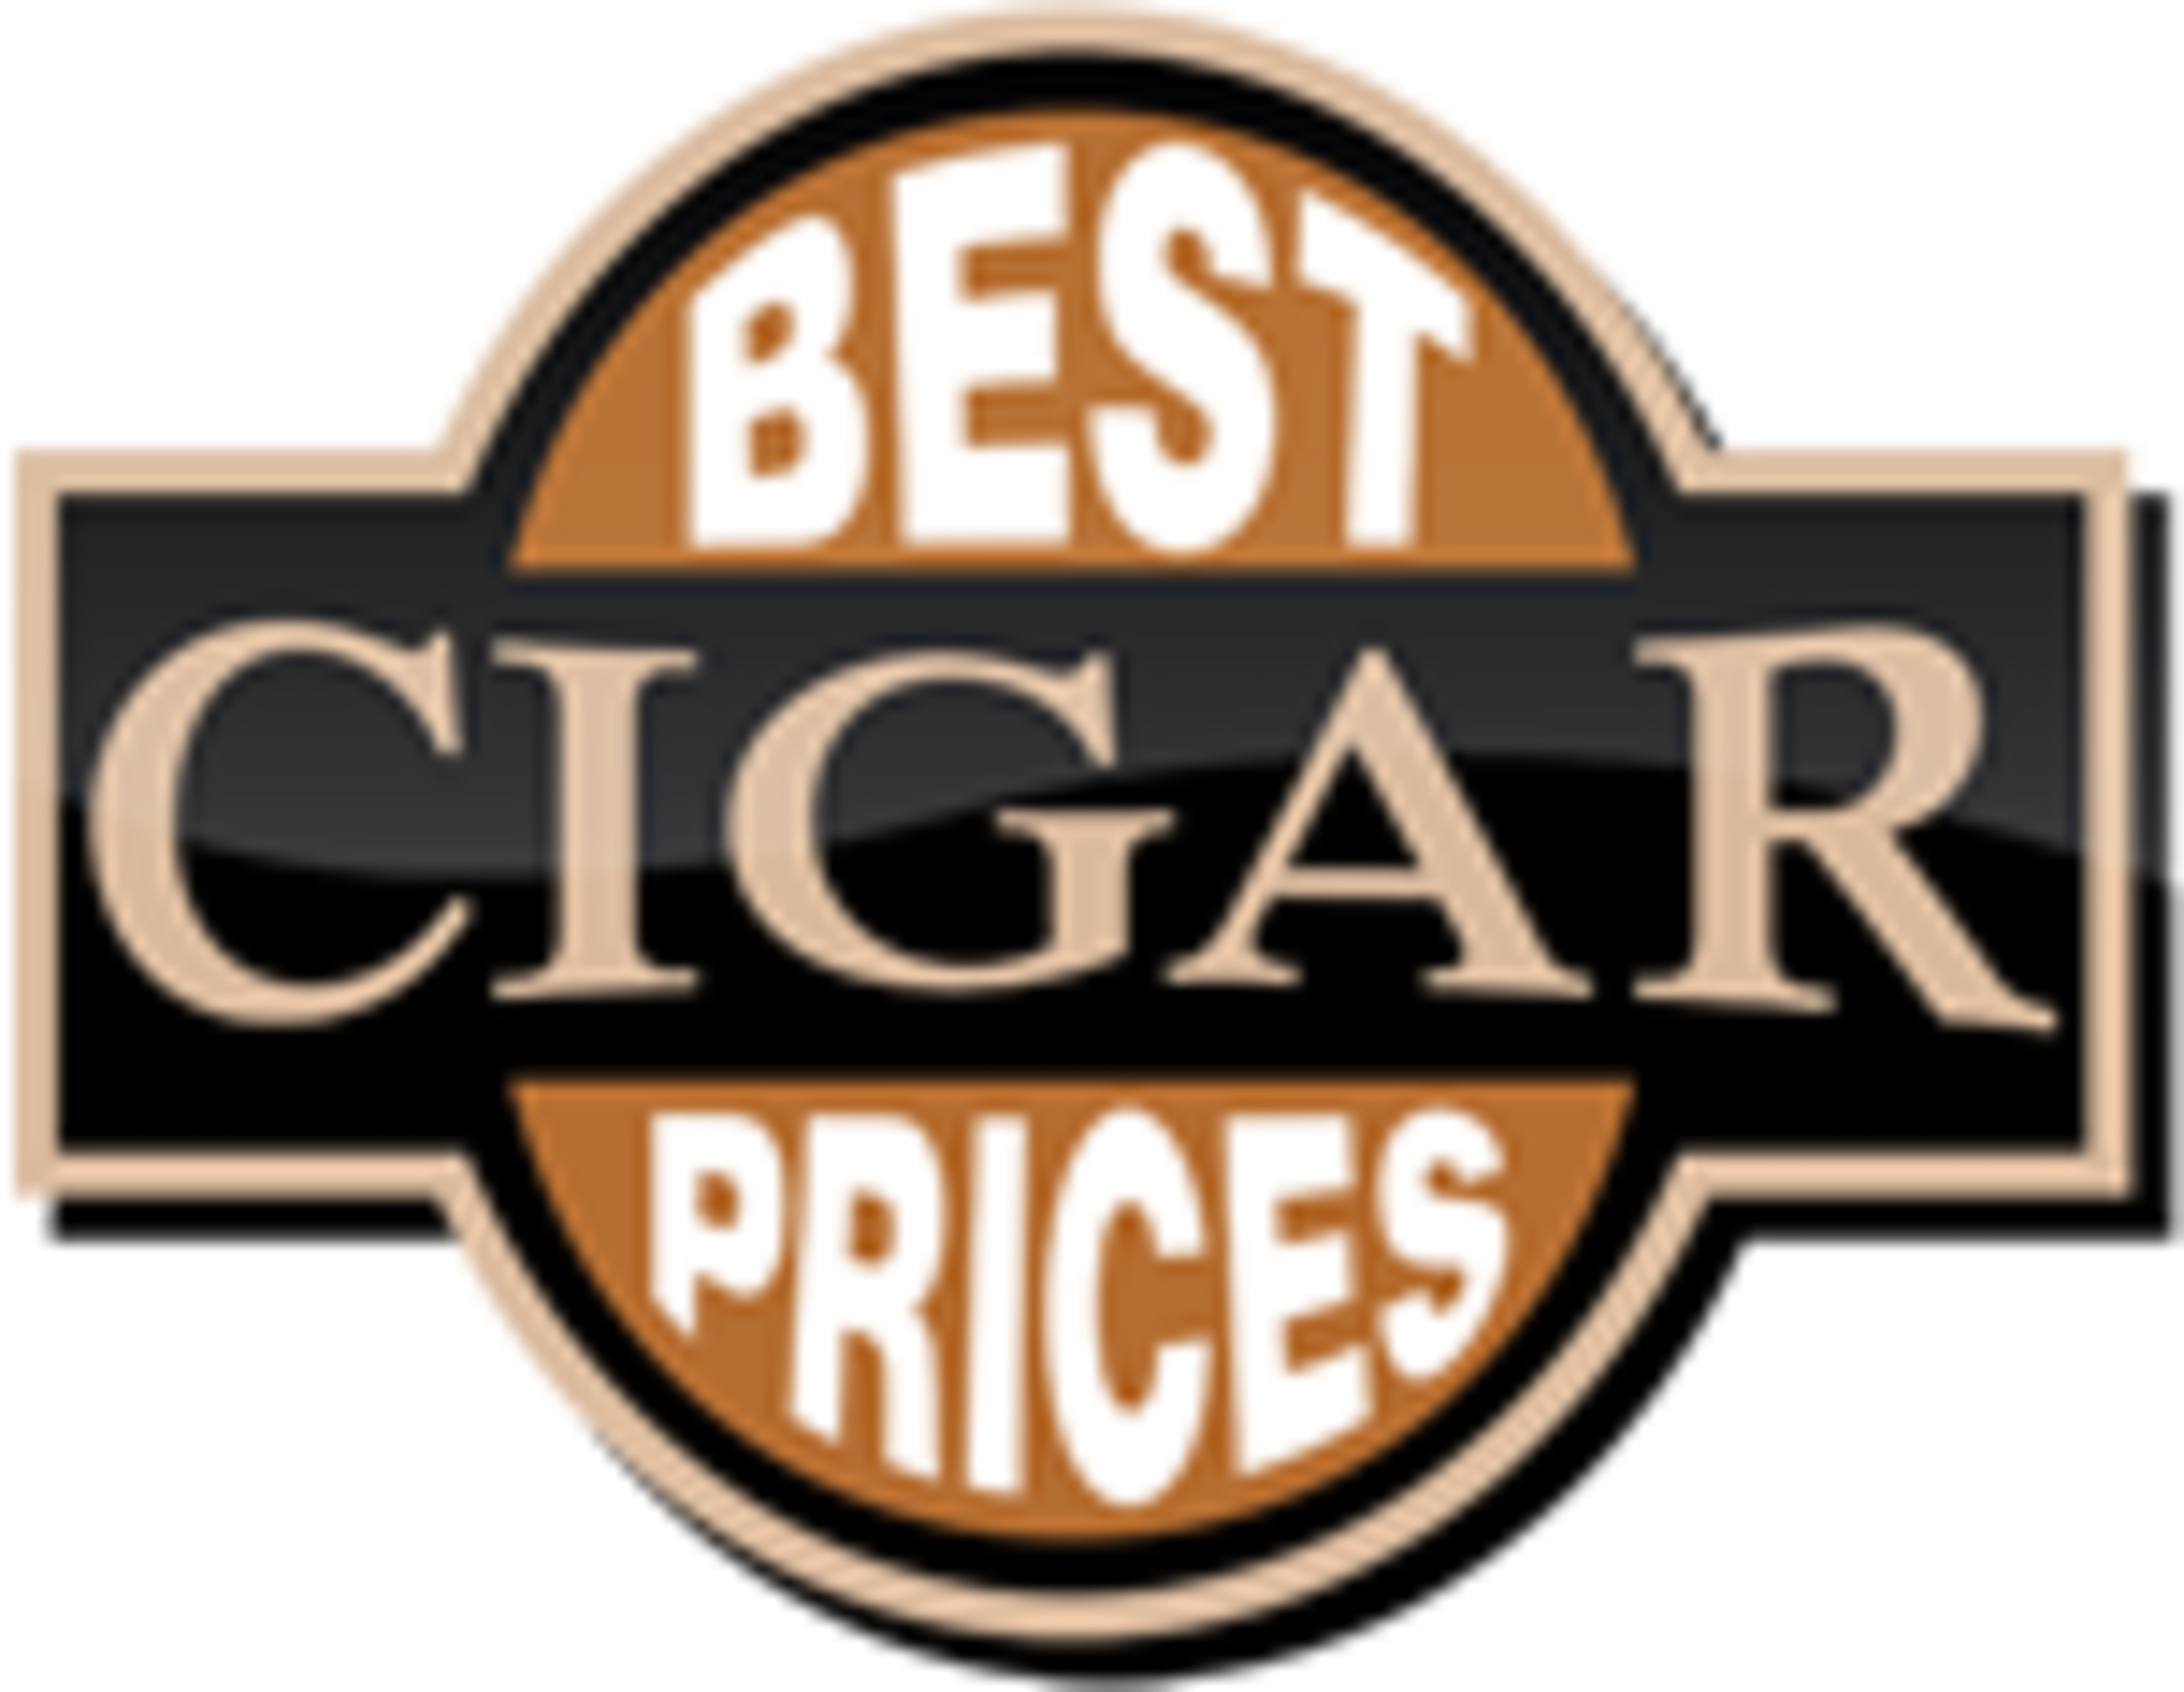 Best Cigar Prices Code